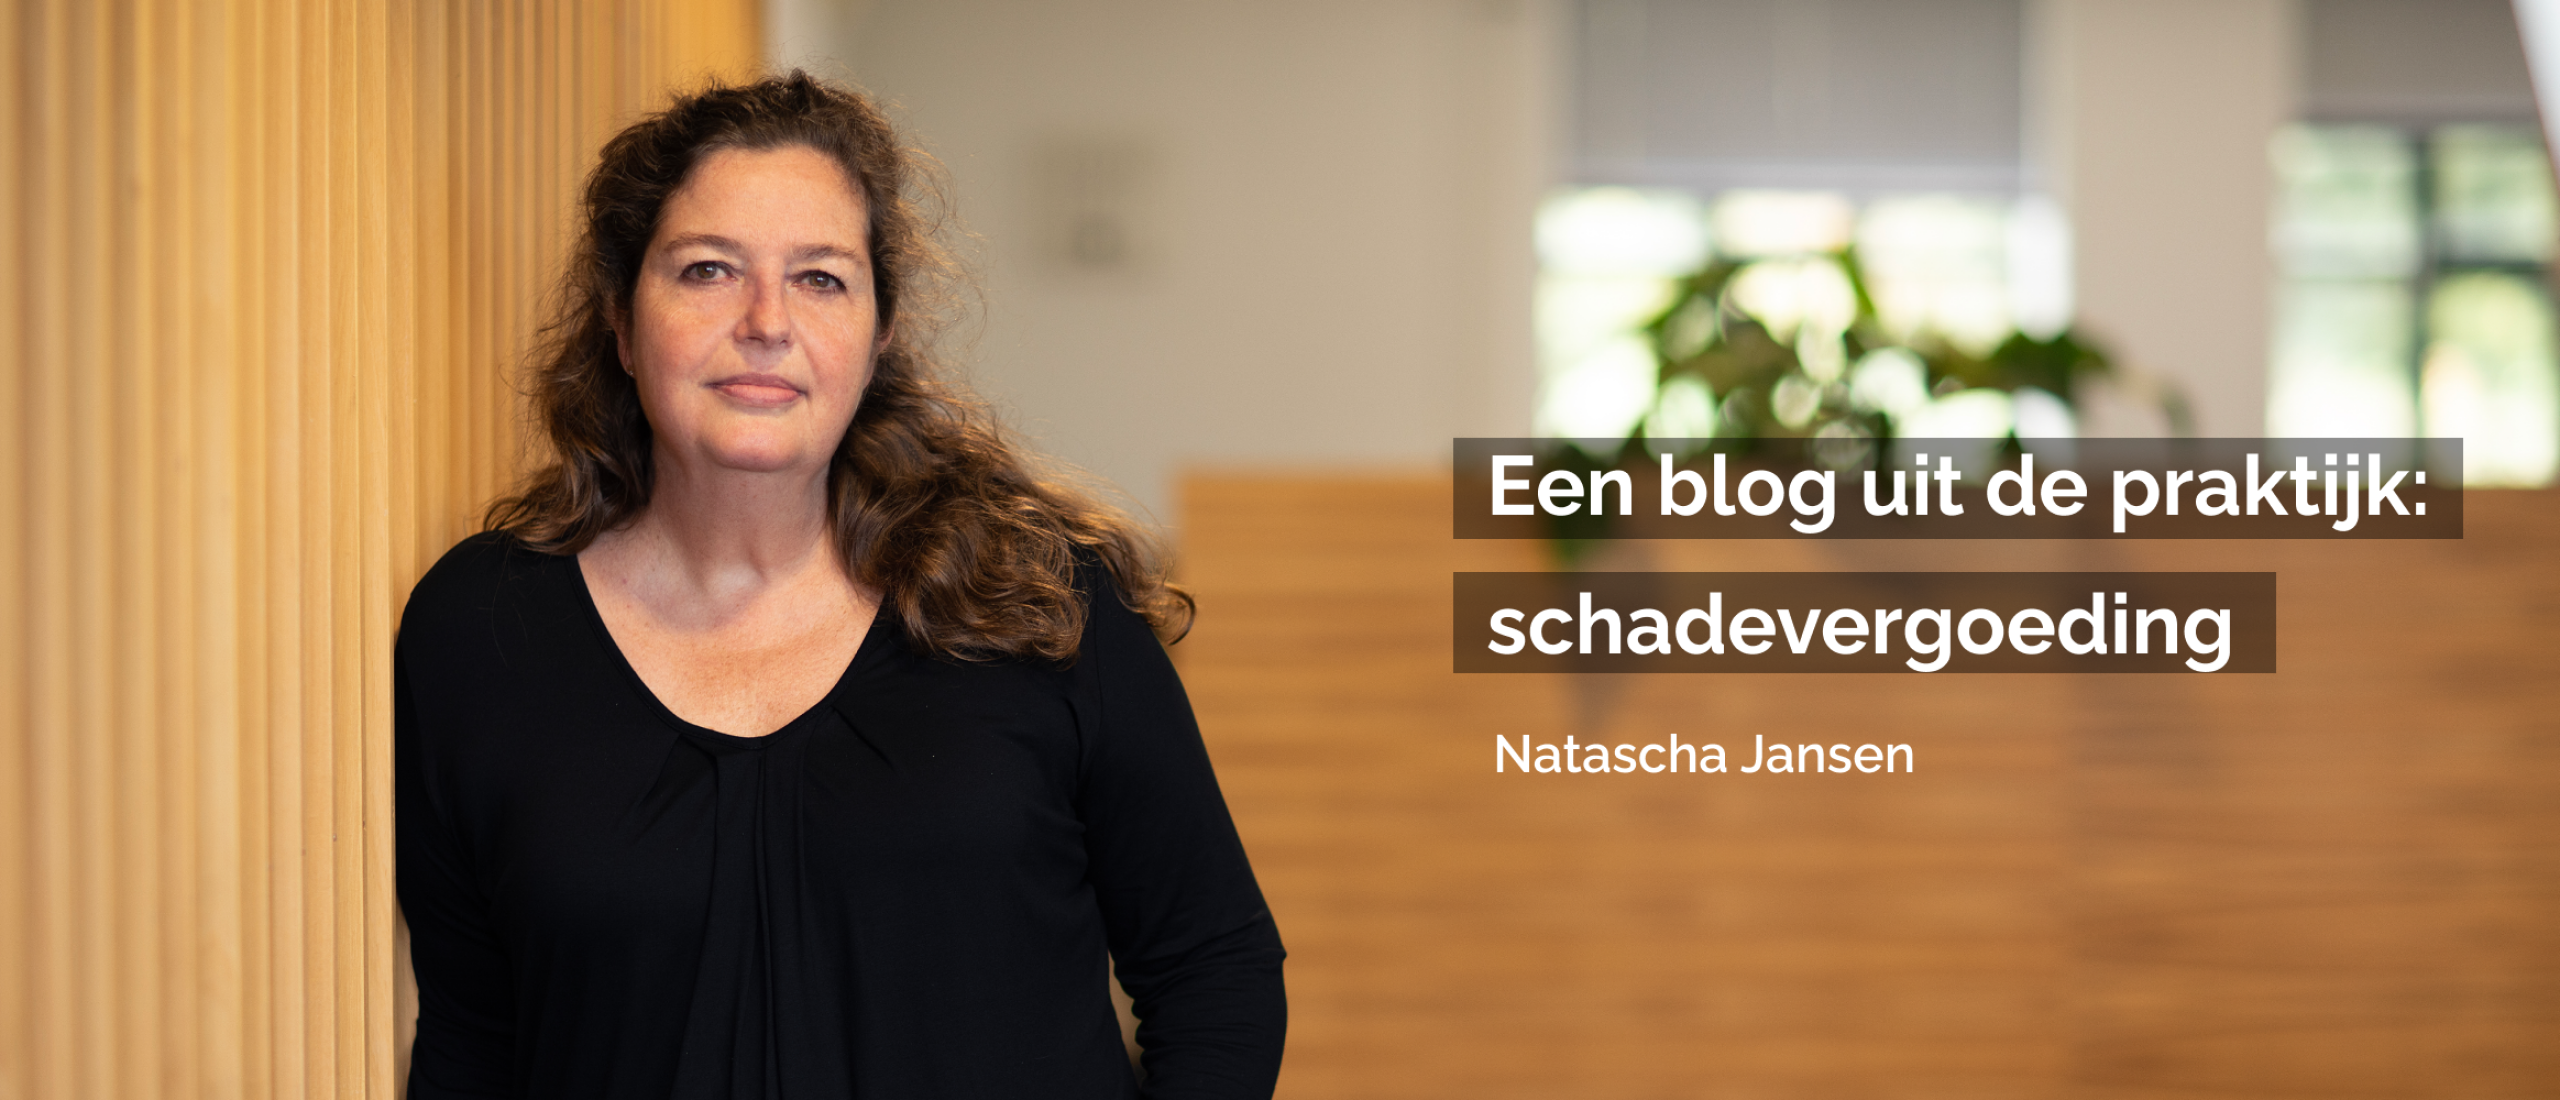 Blog Natascha Jansen | Uit de praktijk: schadevergoeding via het (verkeers)strafrecht en/of de civielrechtelijke weg?